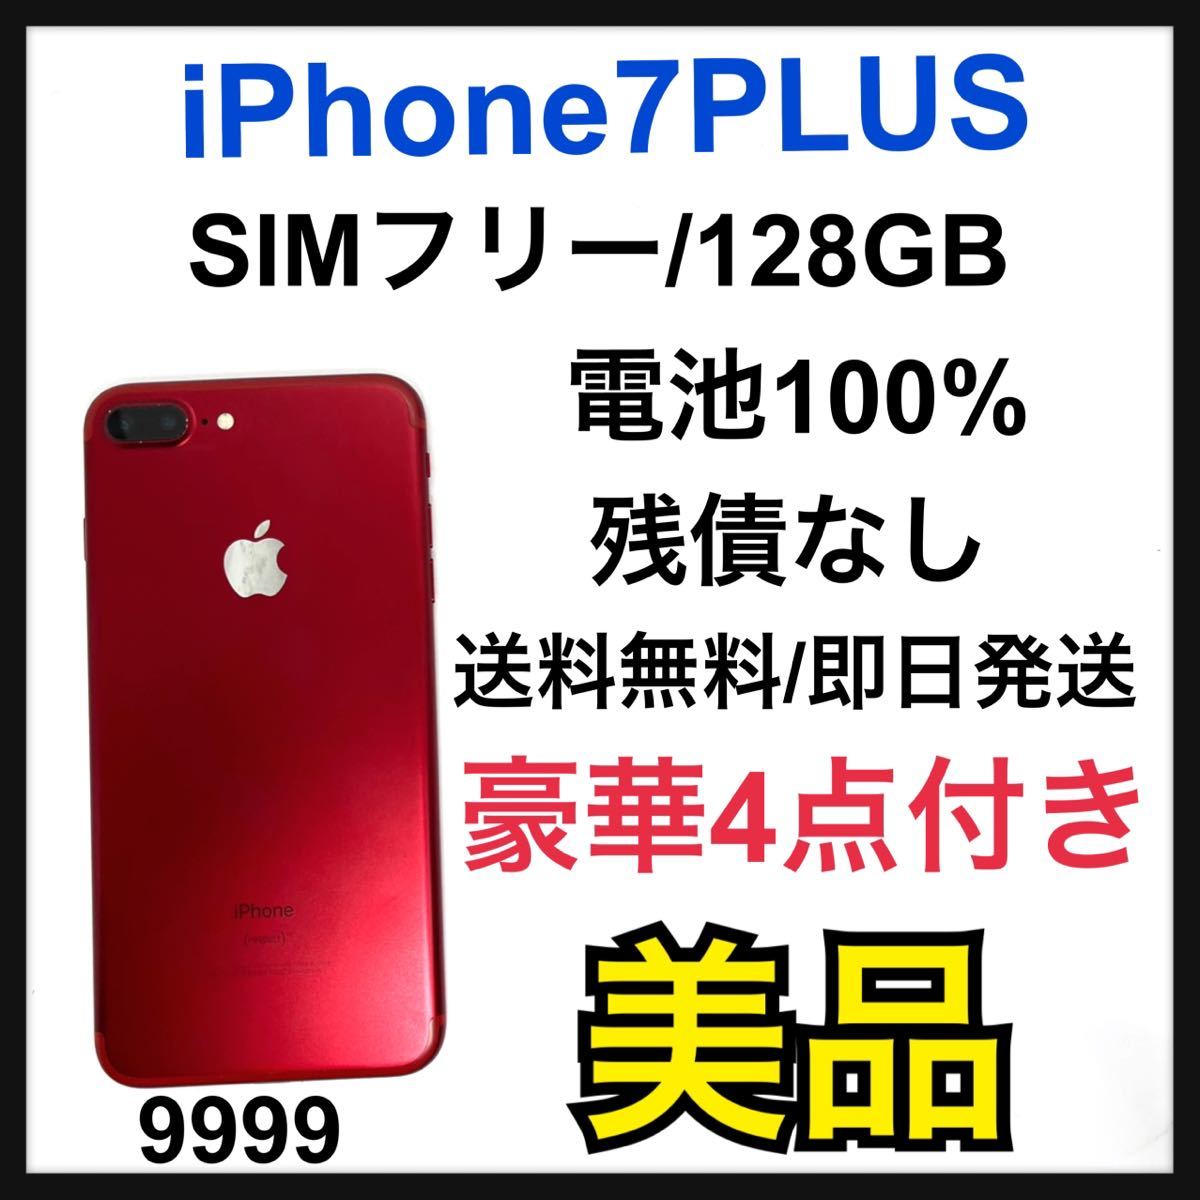 美品 100% iPhone 7 Plus Red 128 GB SIMフリー capacitacion